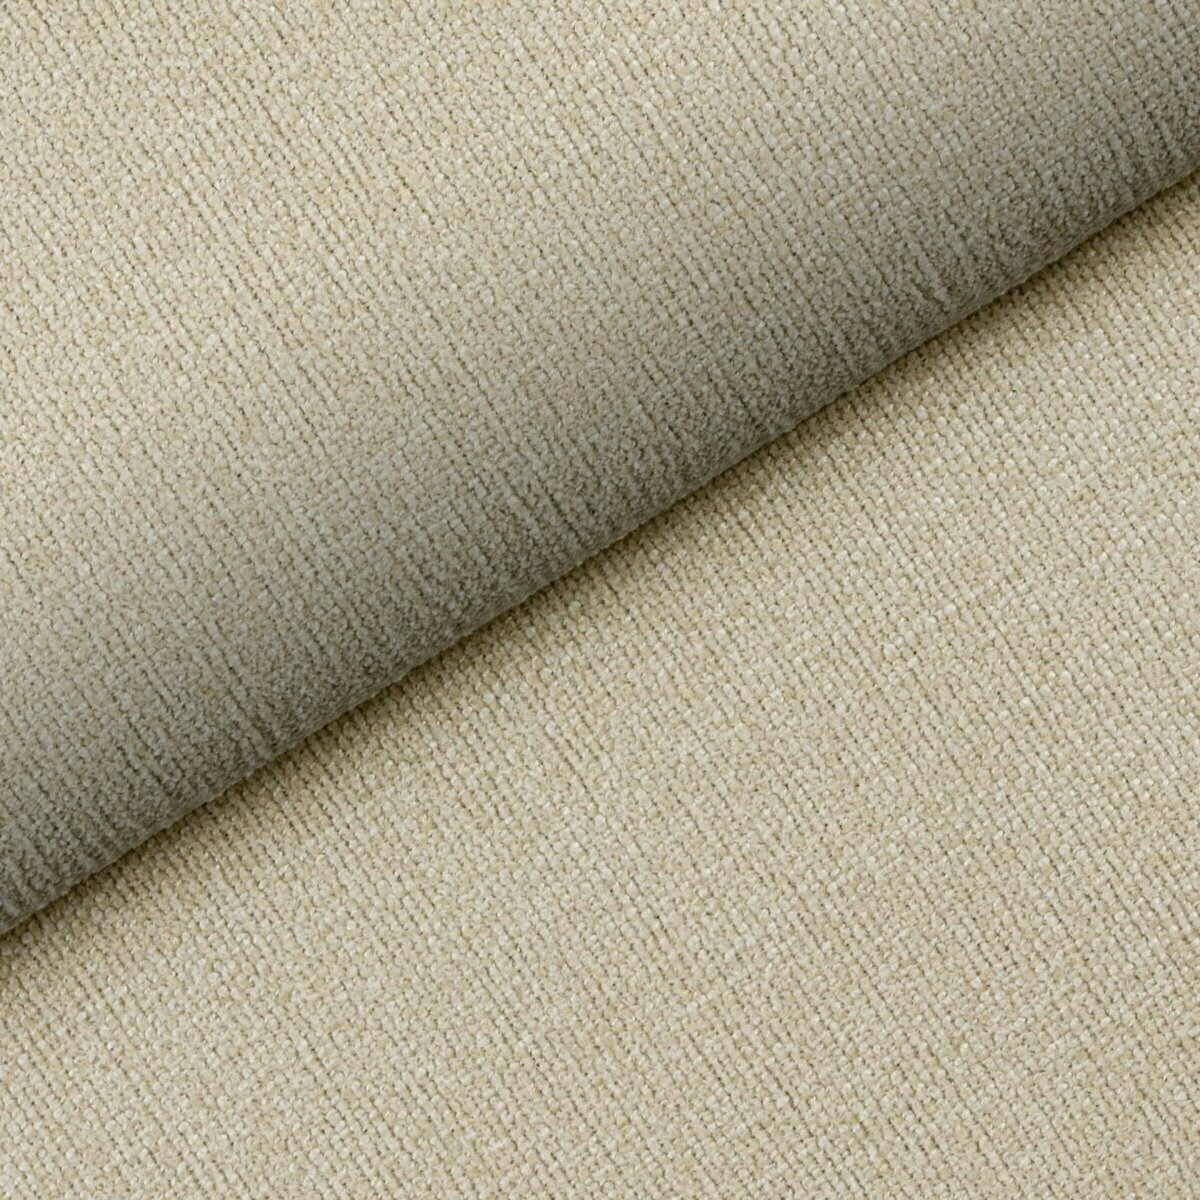 Tkanina tapicerska przeznaczona na kanapy, fotele, krzesła i łóżka, Tulia 02 Fargotex. Elegancki kolor ecru, pleciona struktura.